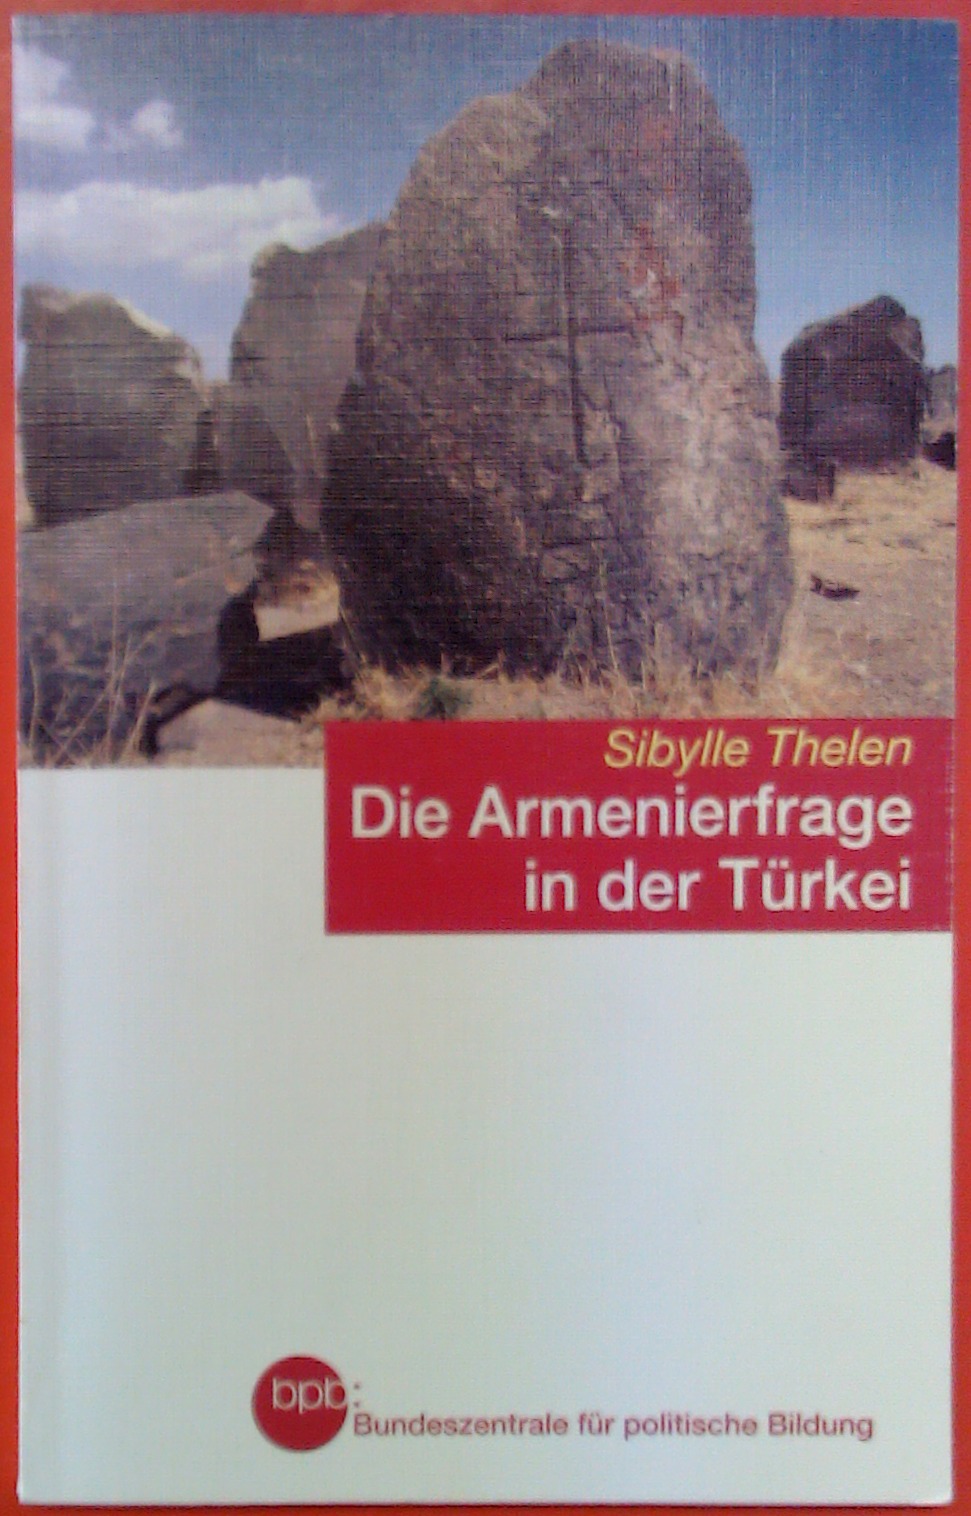 Die Armenierfrage in der Türkei - Schriftenreihe Band 1130 - Sibylle Thelen / Bundeszentrale für politische Bildung (Hrsg.)